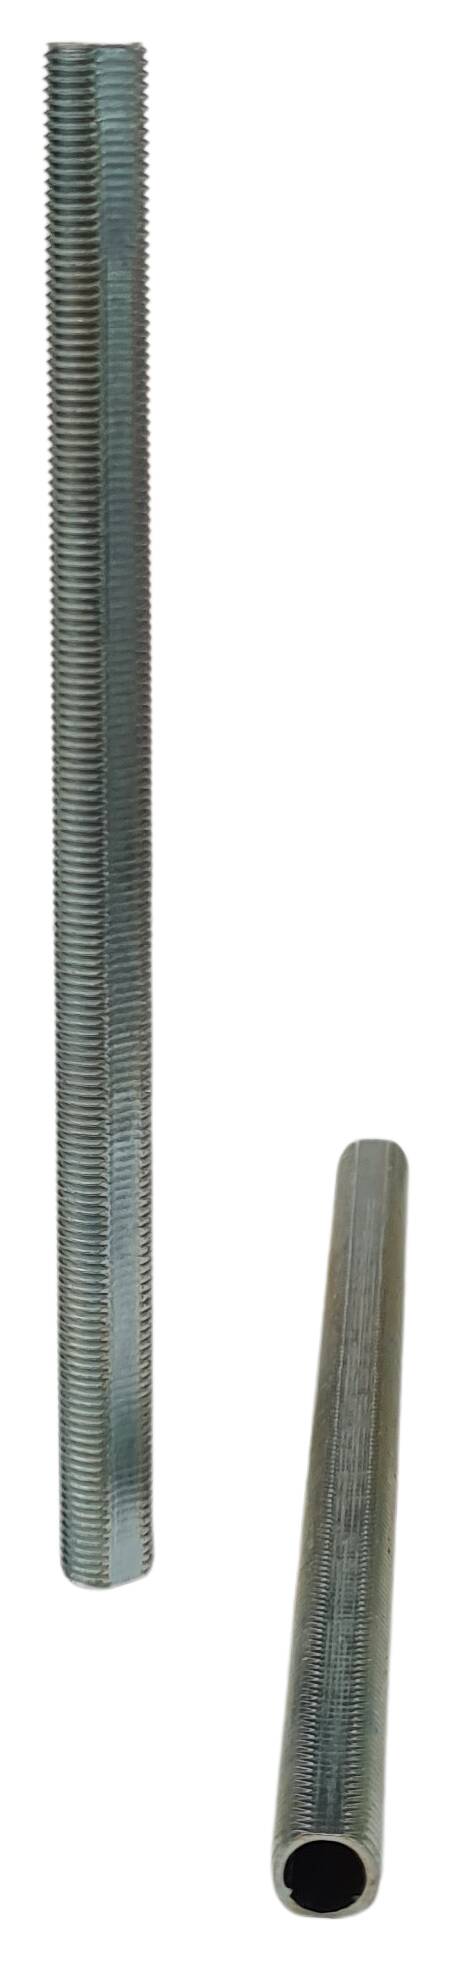 iron thread tube M10x1x130 profil zinc